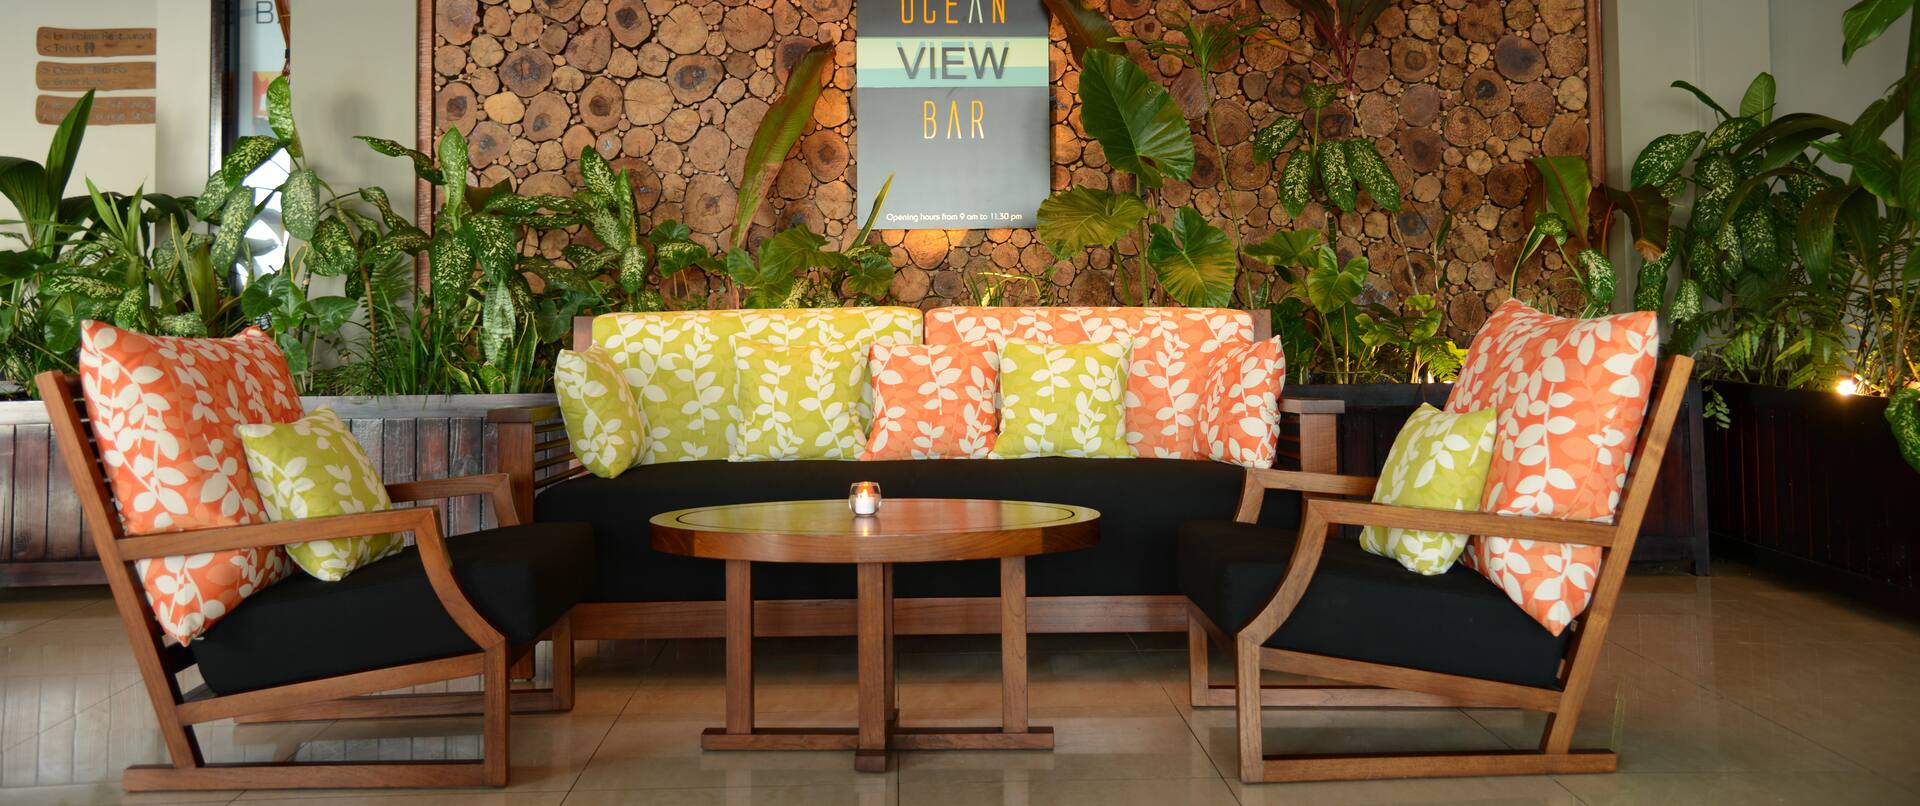 Ocean View Bar